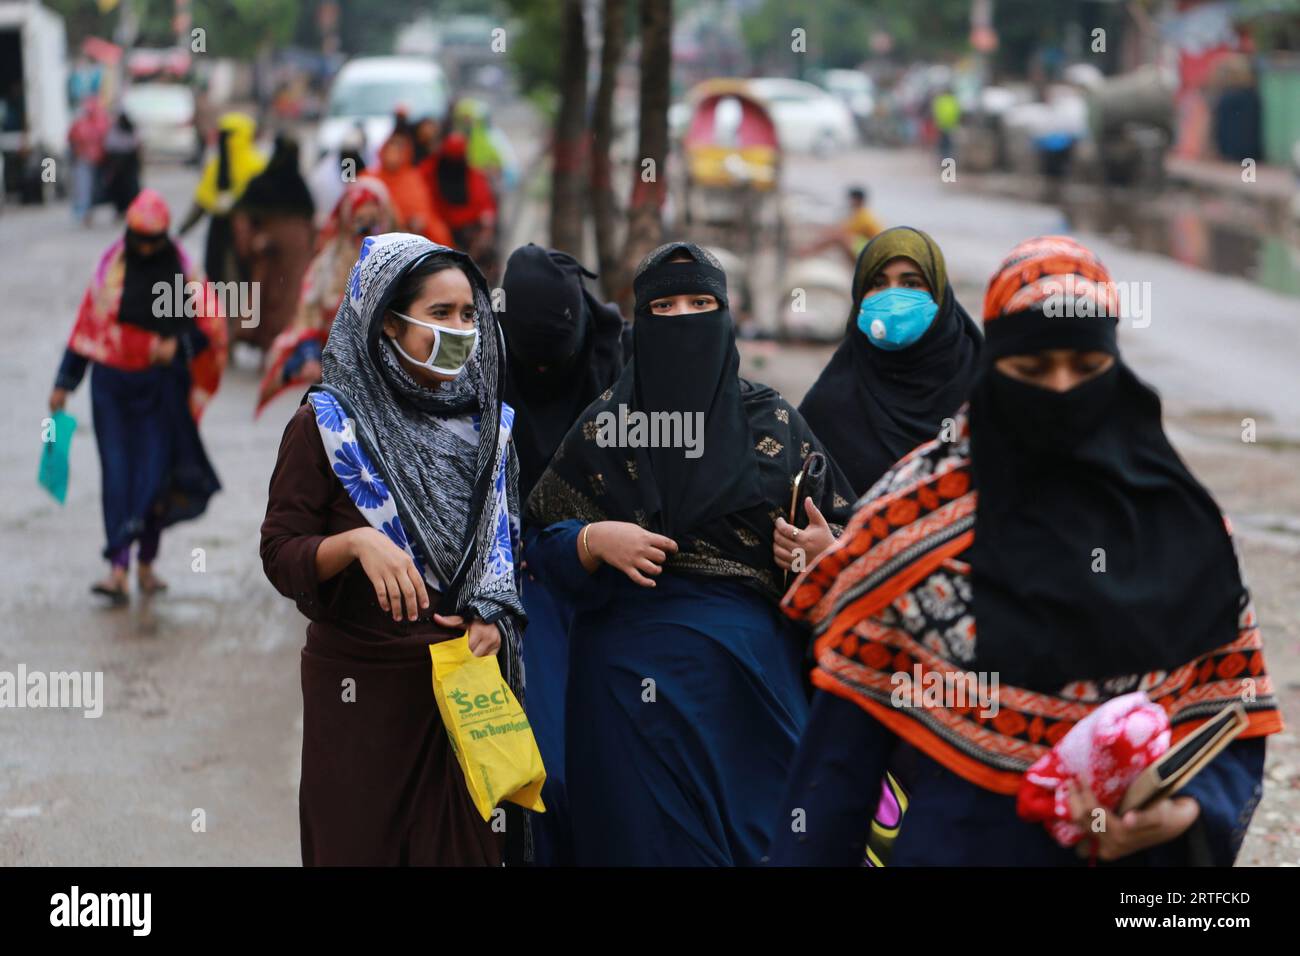 DHAKA, BANGLADESH - 28 AVRIL 2020 : des travailleurs du vêtement marchent dans la rue après la réouverture des usines pendant le confinement à l’échelle du pays comme mesure préventive contre la pandémie de coronavirus COVID-19 à Dhaka, au Bangladesh, le 28 avril 2020. Banque D'Images